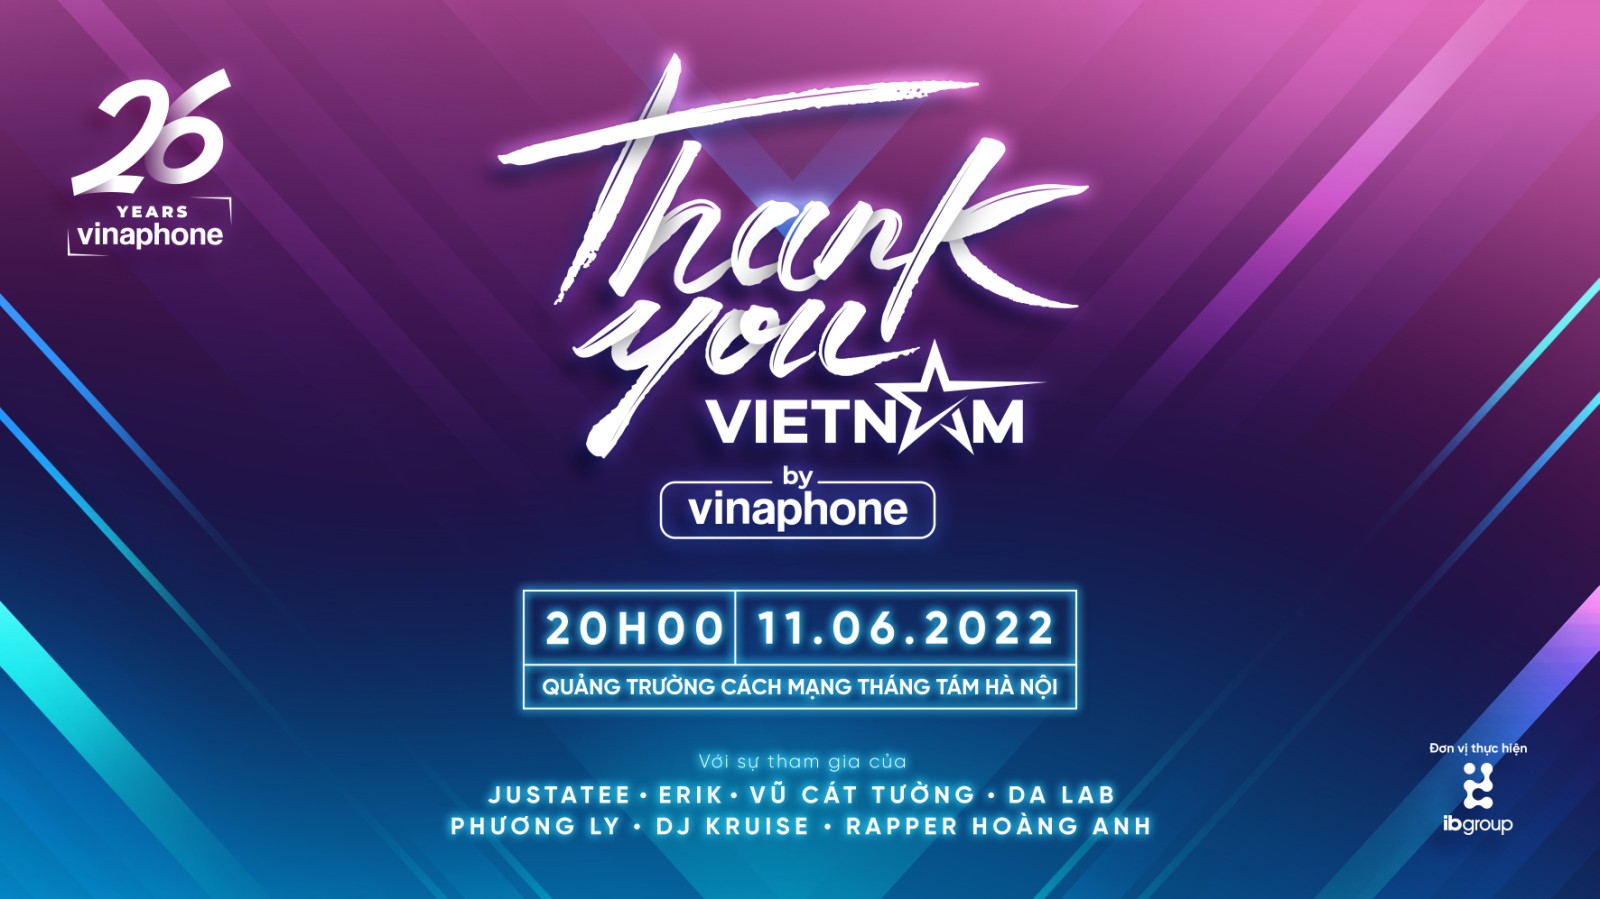 VinaPhone tái xuất với đại nhạc hội “Thank you, Vienam”, quy tụ dàn sao “khủng” - Ảnh 1.